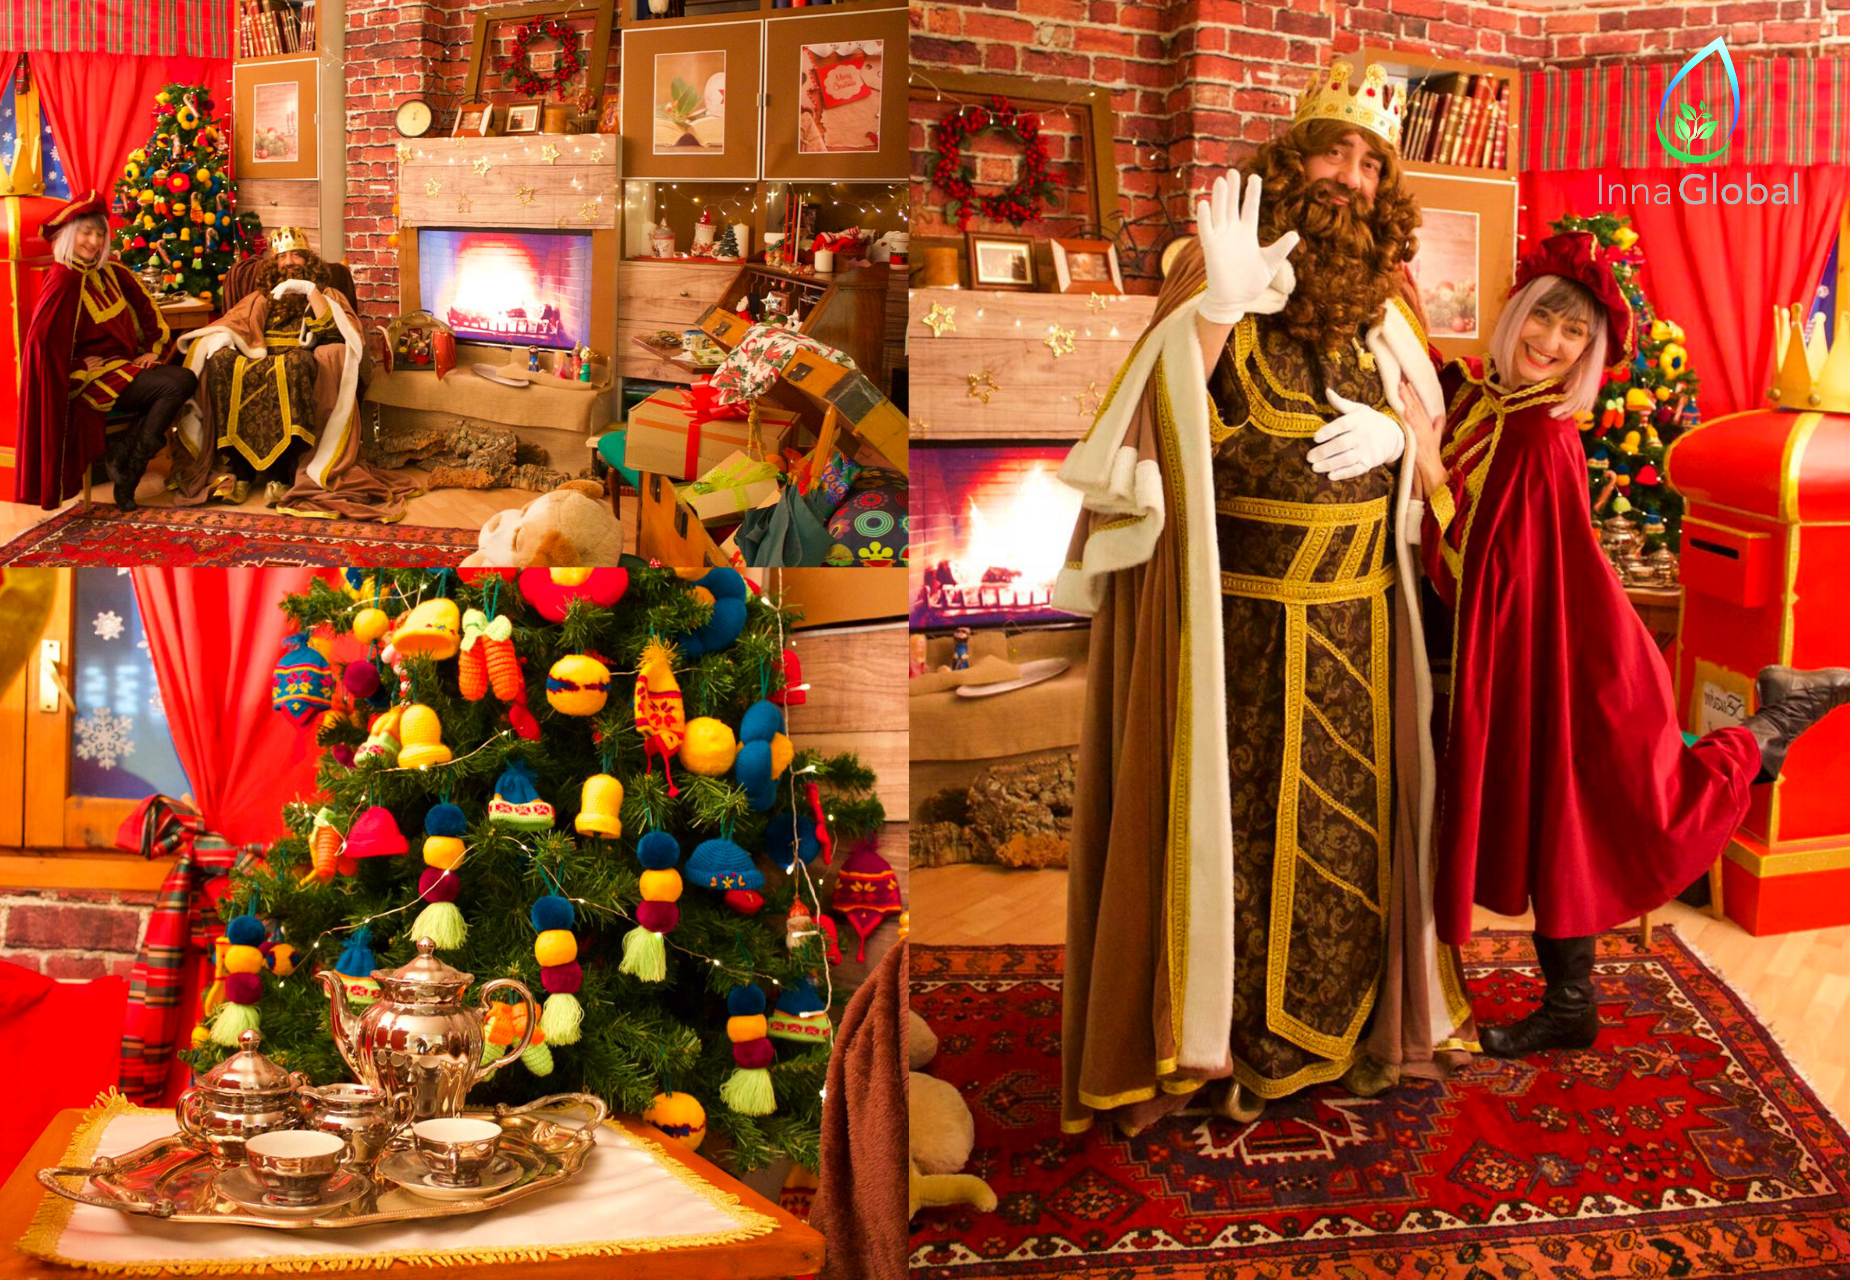 Llevamos a los Reyes Magos, Papá Noel, los elfos y pajes a todos los hogares desde nuestra Casita de Navidad virtual